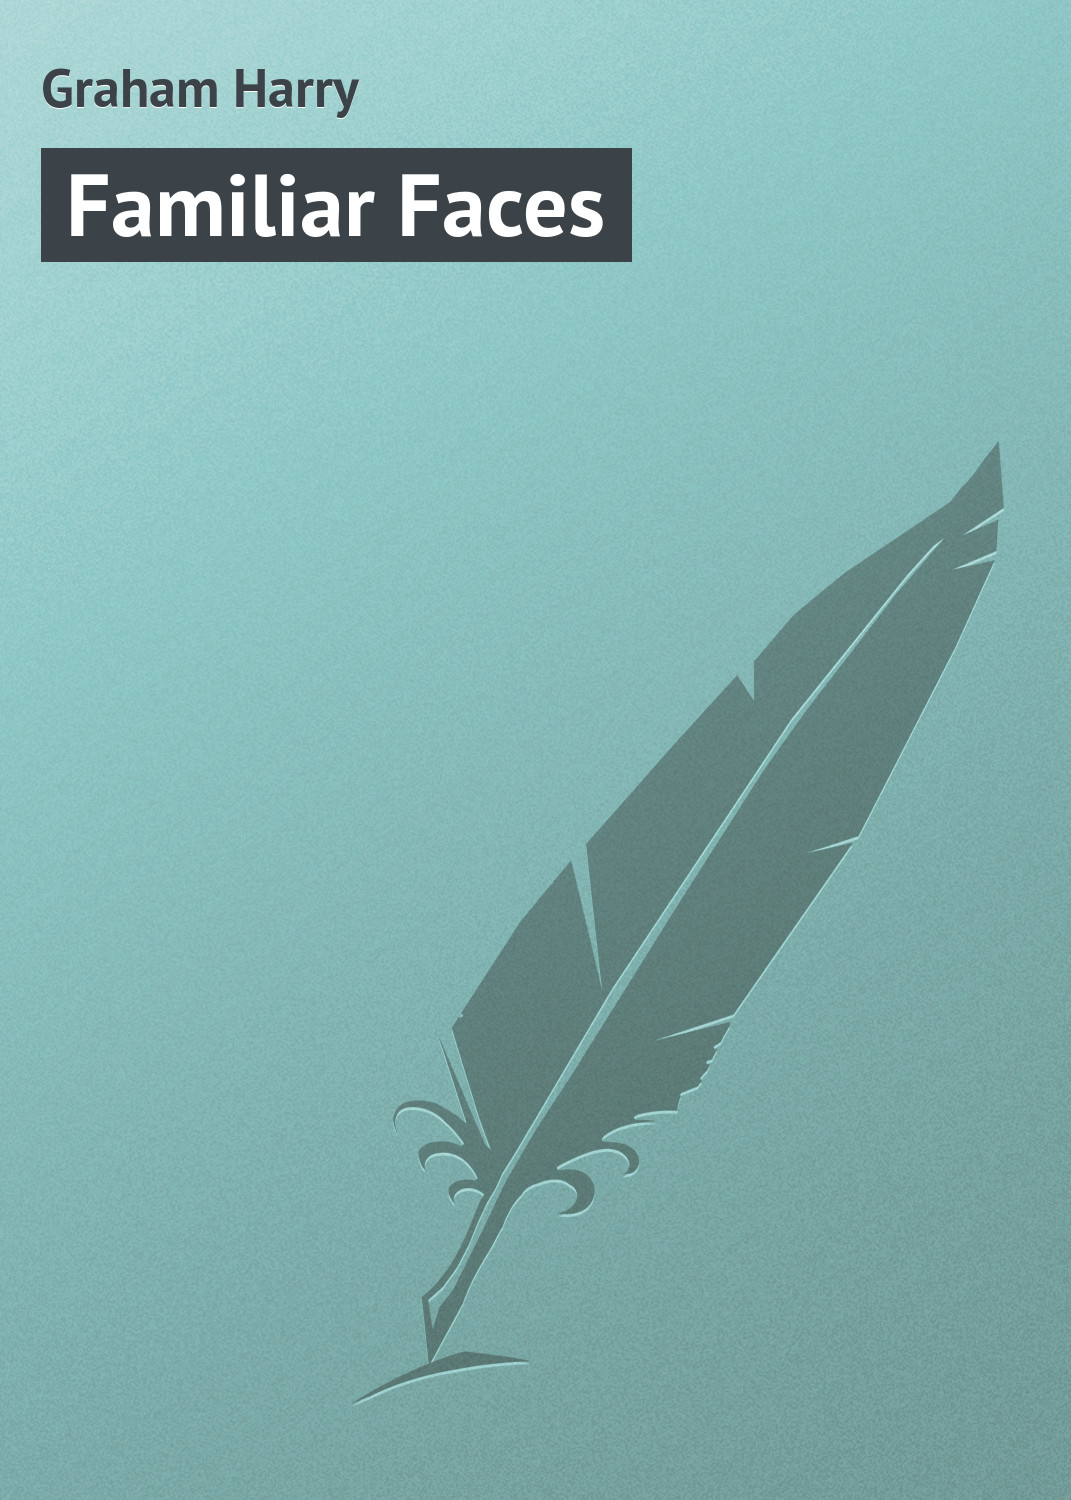 Книга Familiar Faces из серии , созданная Harry Graham, может относится к жанру Поэзия, Зарубежная классика, Зарубежные стихи, Зарубежный юмор. Стоимость электронной книги Familiar Faces с идентификатором 23160235 составляет 5.99 руб.